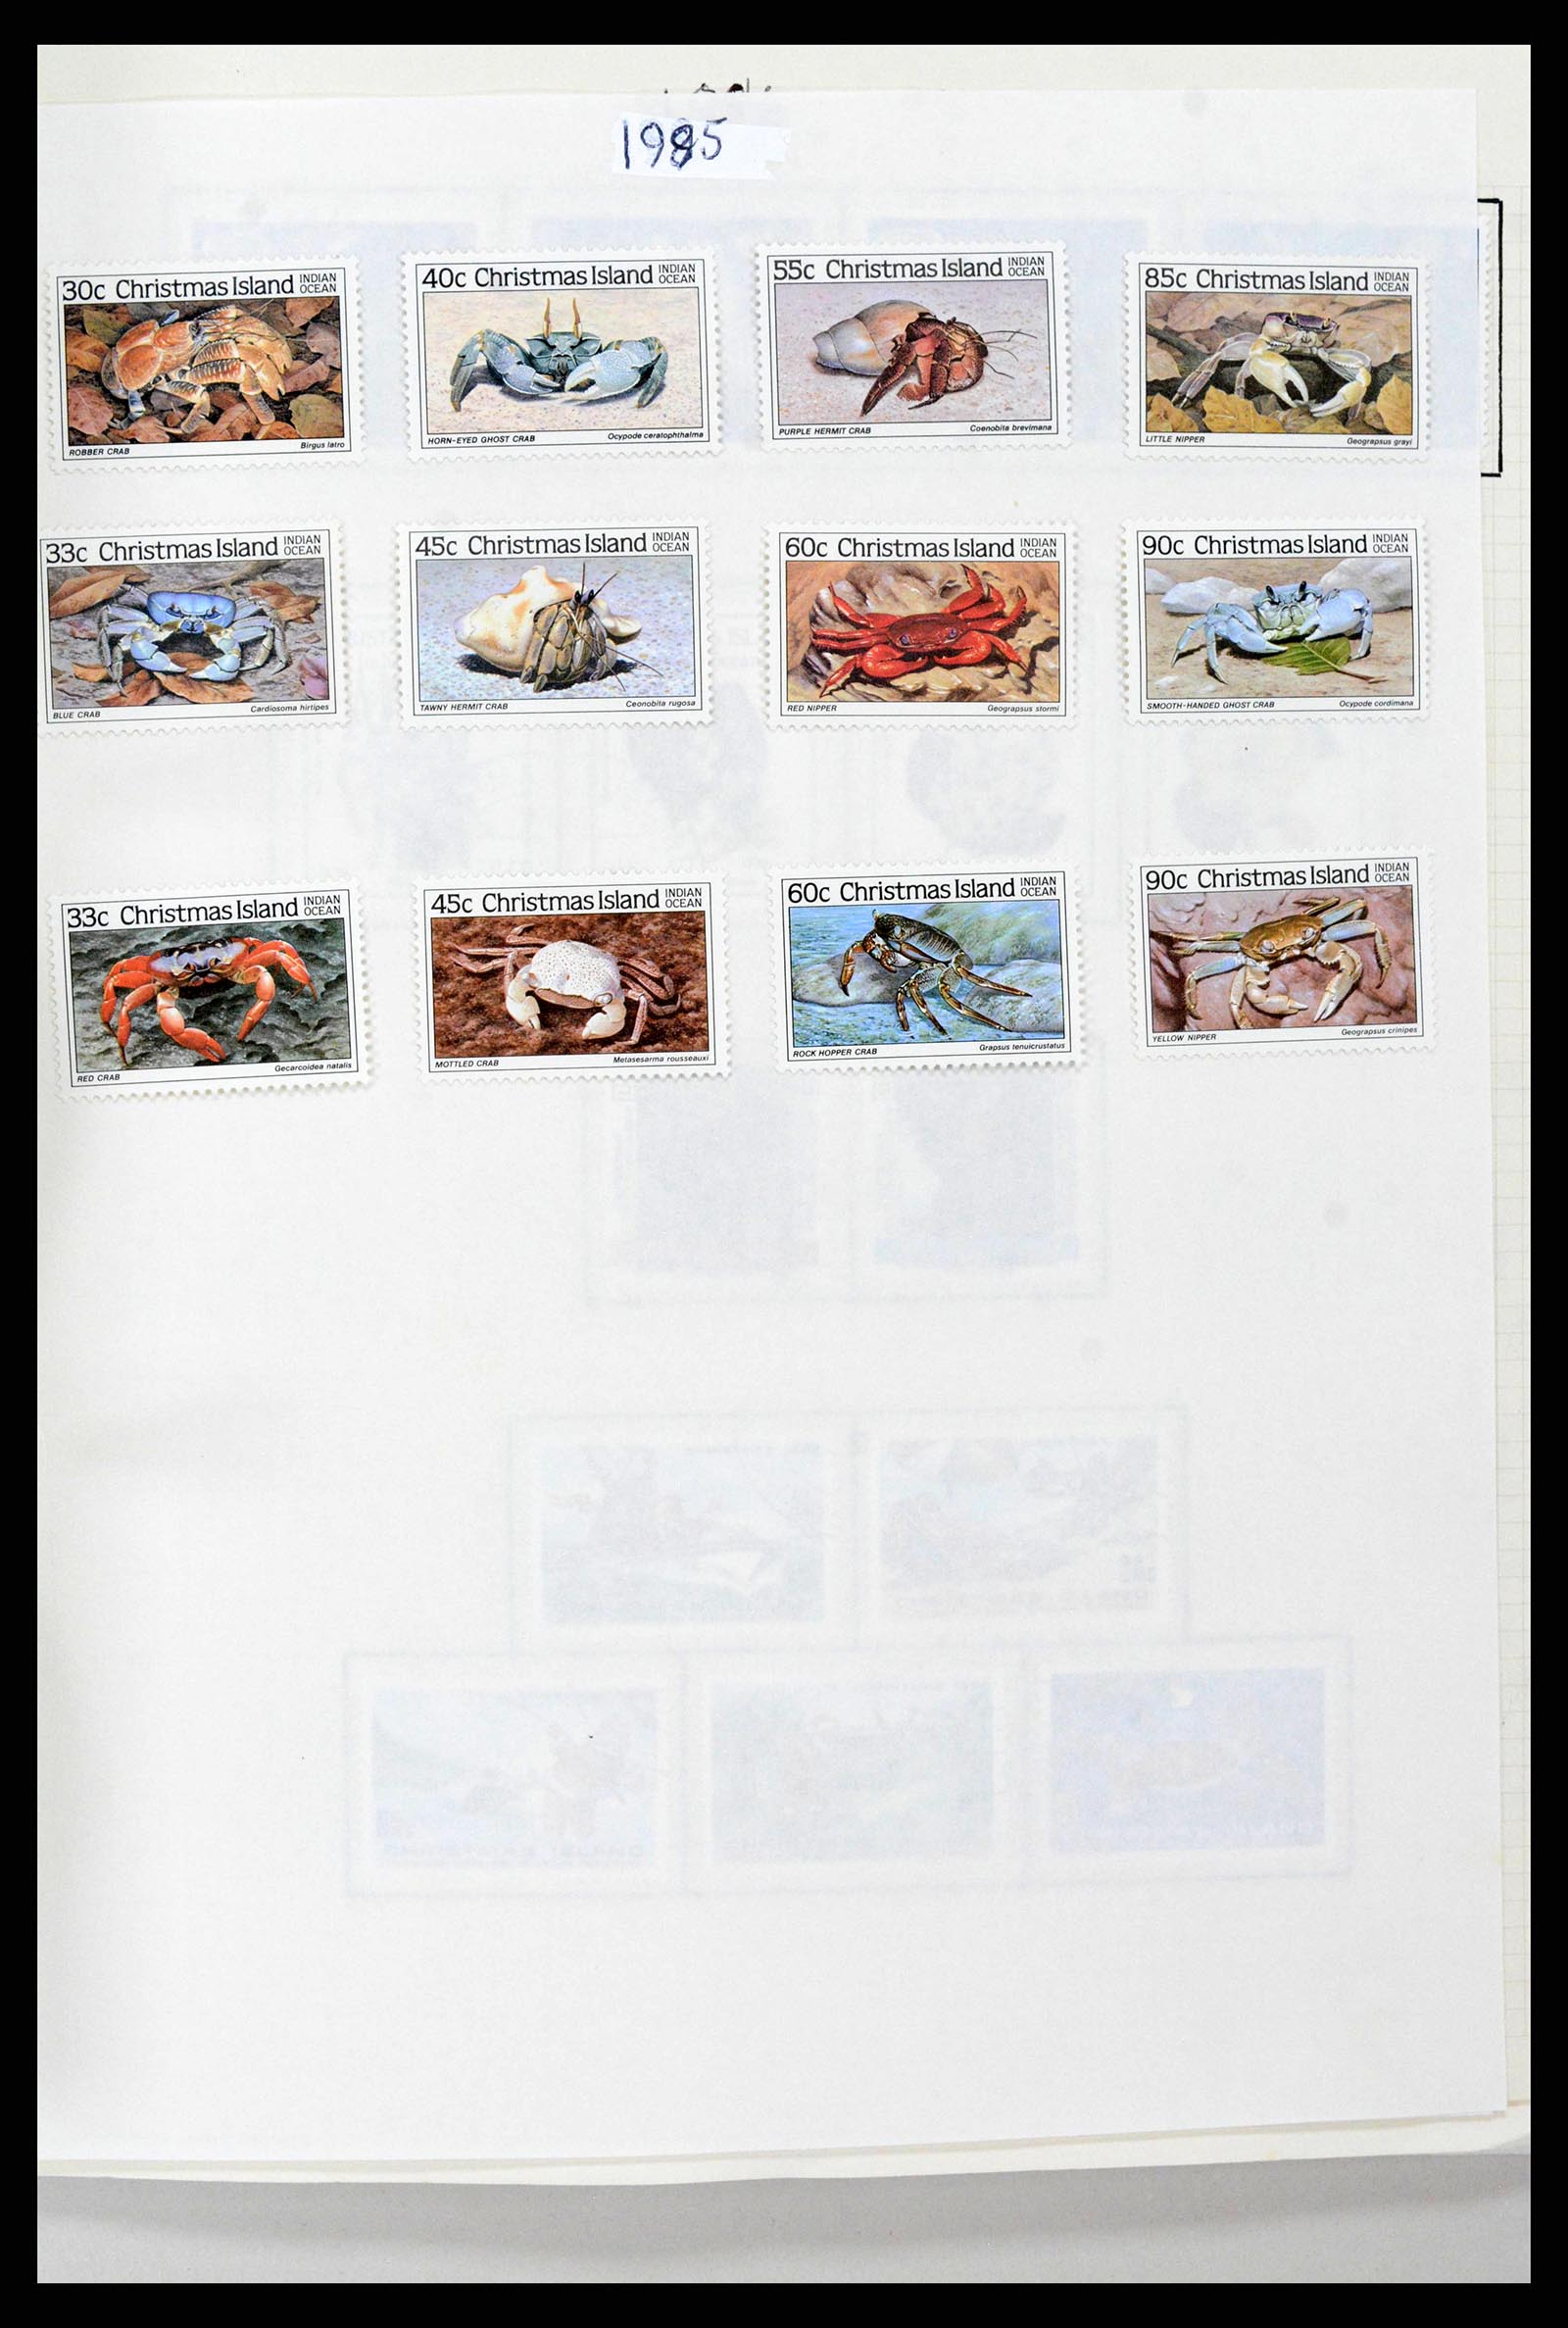 38256 0022 - Stamp collection 38256 Christmas Island 1958-2006.